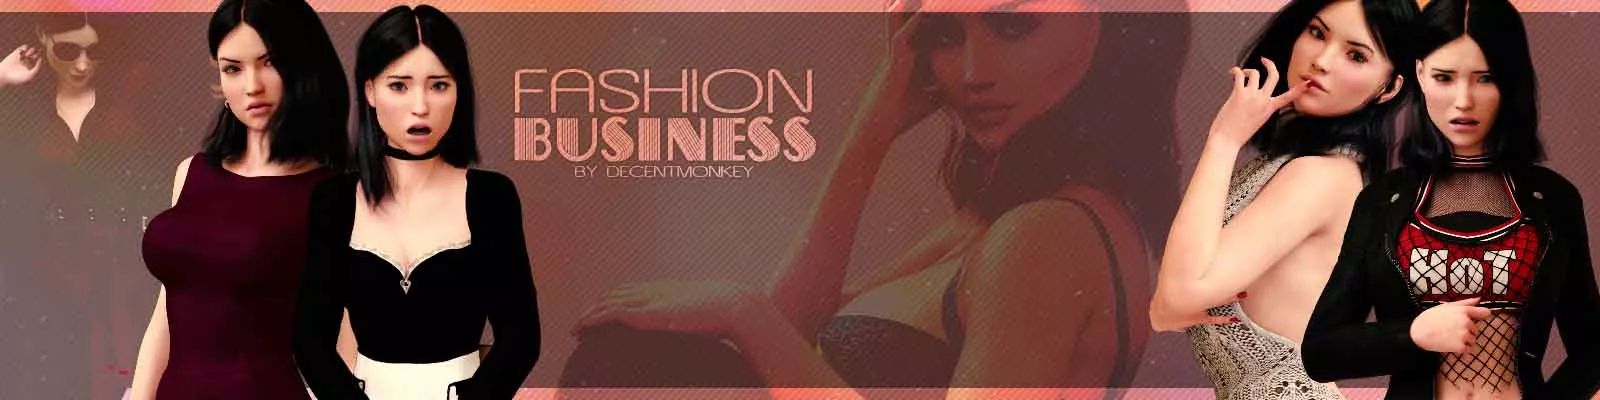 Fashion Business 3d sexspill, pornospill, voksenspill